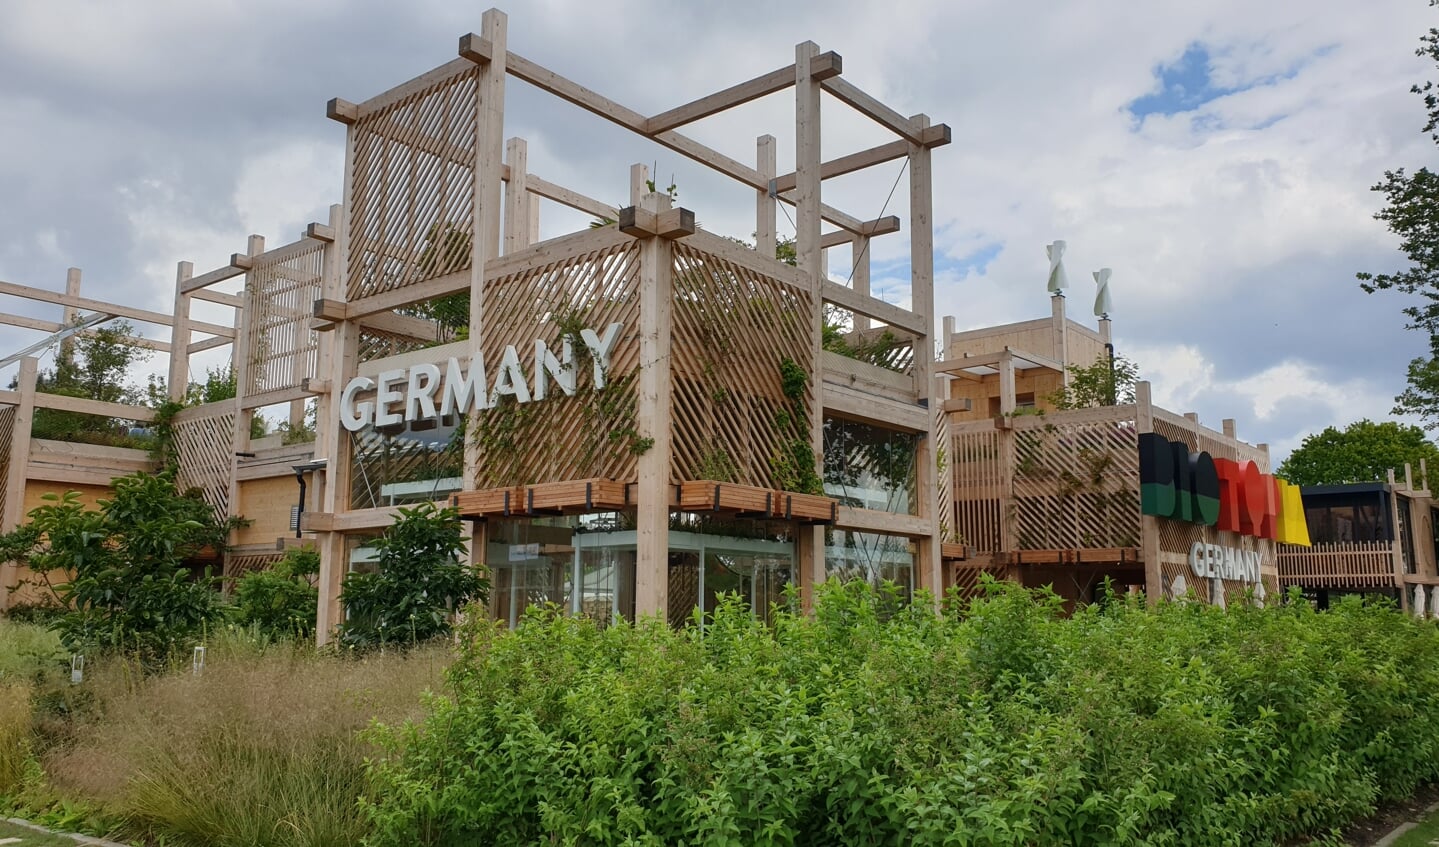 Het paviljoen van Duitsland op de Floriade Expo in Almere. (Foto: Almere DEZE WEEK)